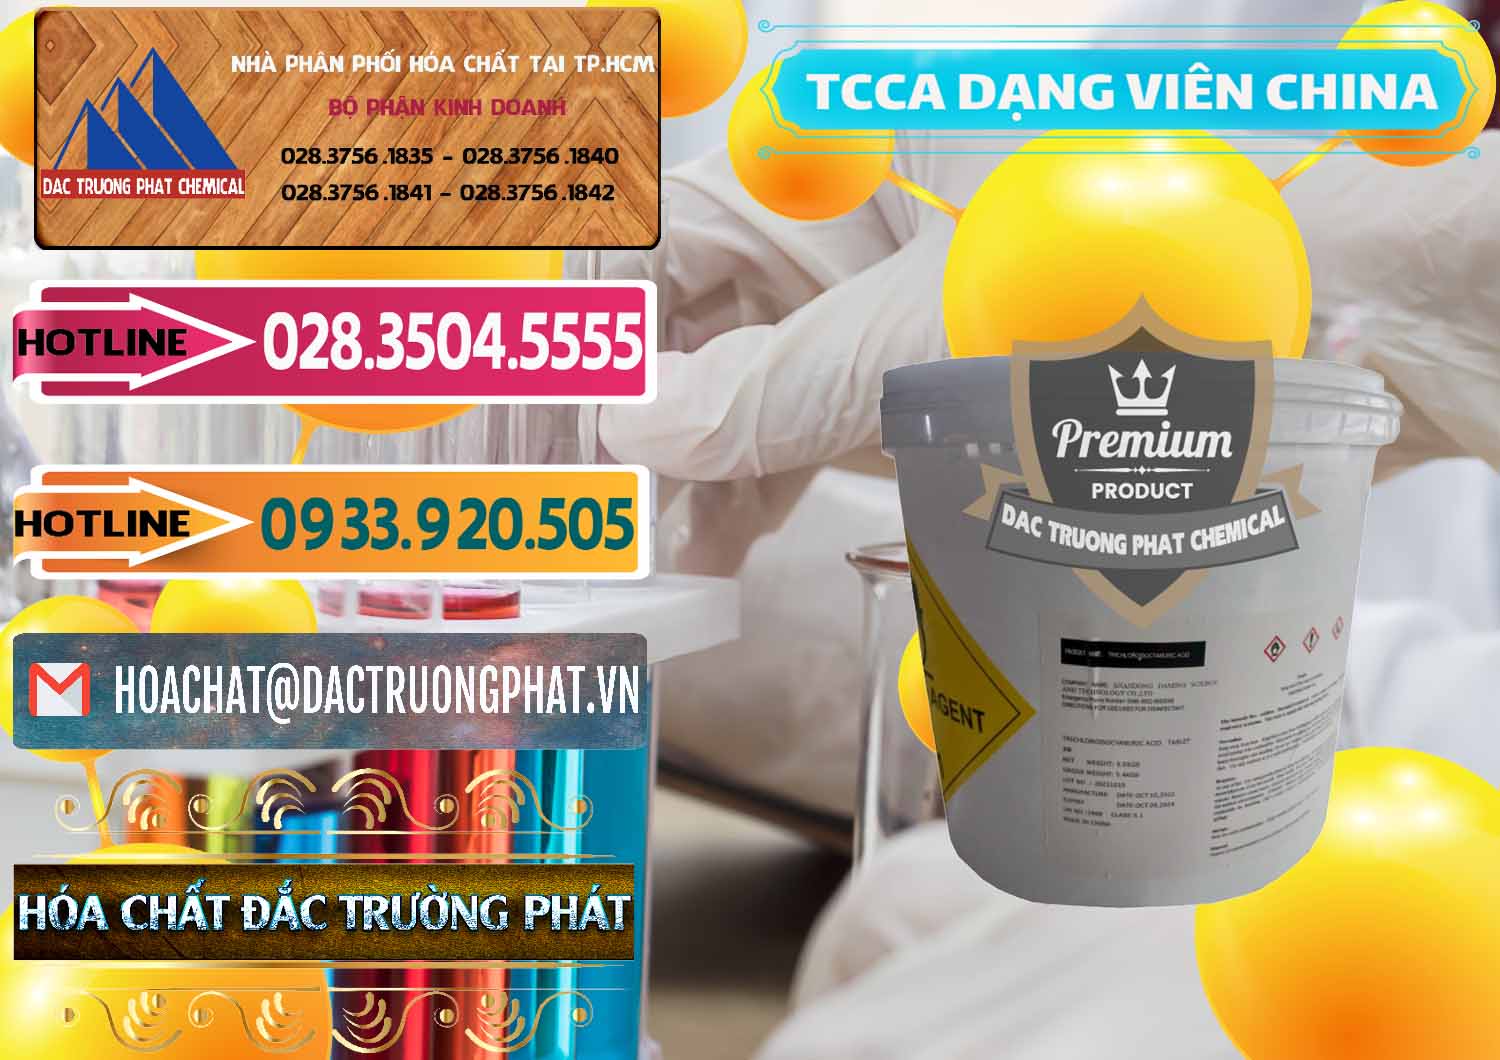 Cty kinh doanh và bán TCCA - Acid Trichloroisocyanuric Dạng Viên Thùng 5kg Trung Quốc China - 0379 - Công ty phân phối - bán hóa chất tại TP.HCM - dactruongphat.vn